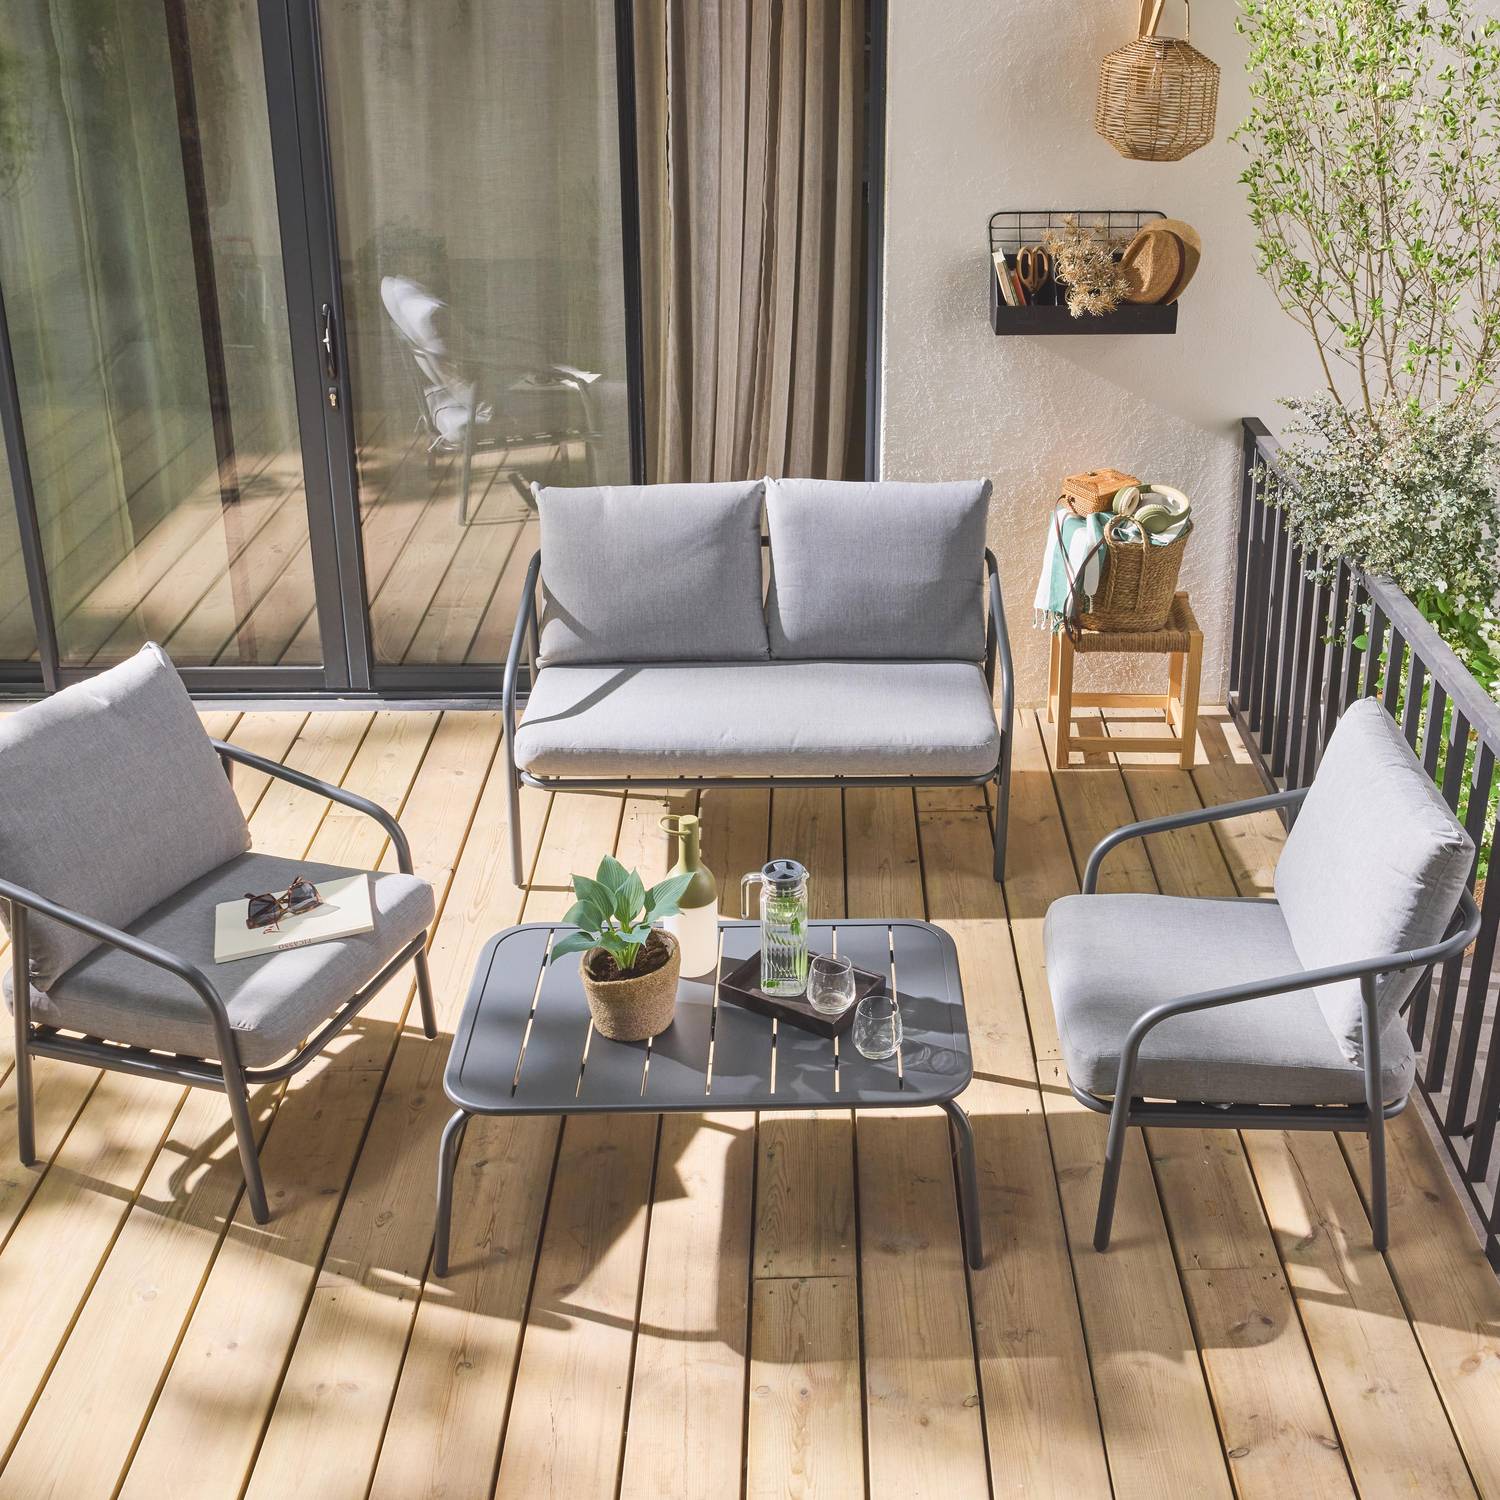 Conjunto de mobiliário de jardim metálico de 4 lugares em antracite, almofadas cinzentas, design arredondado puro Photo2